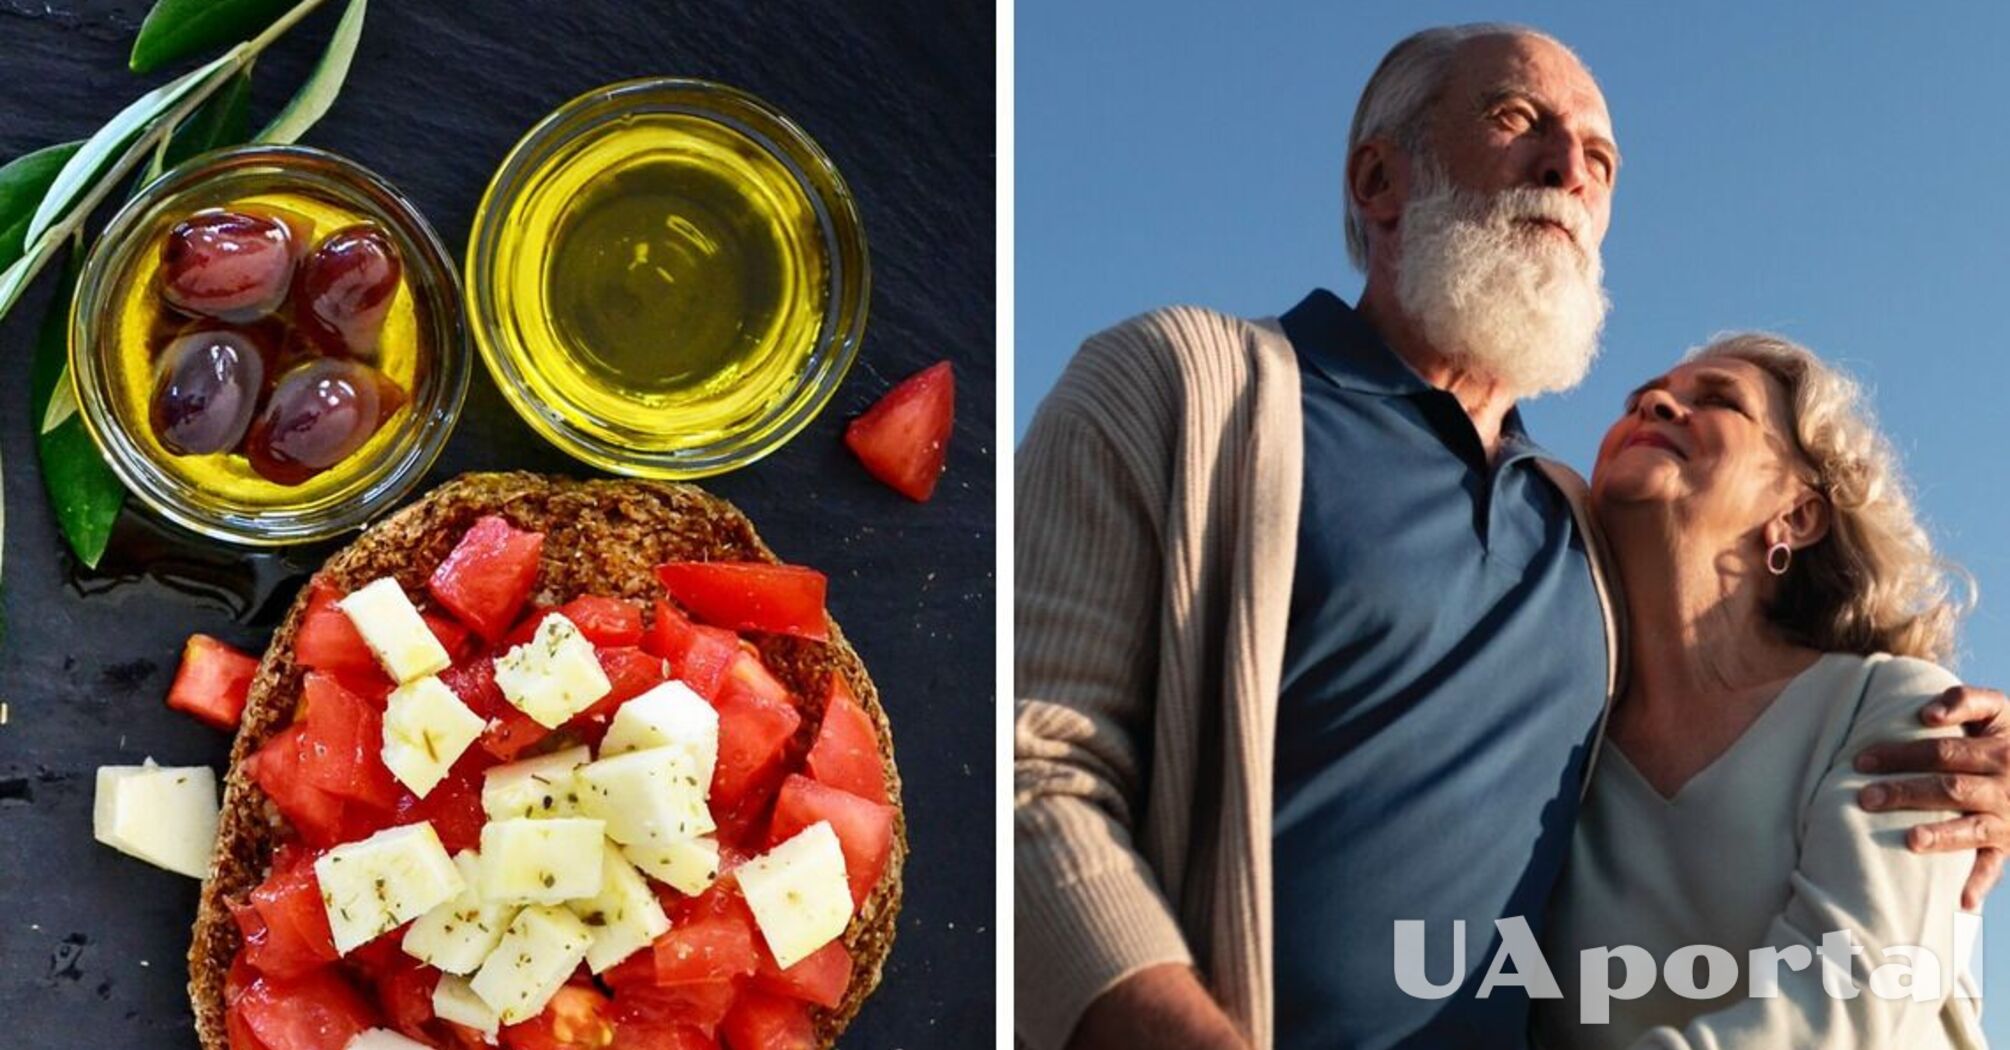 Scientists find that Mediterranean diet can slow down brain aging